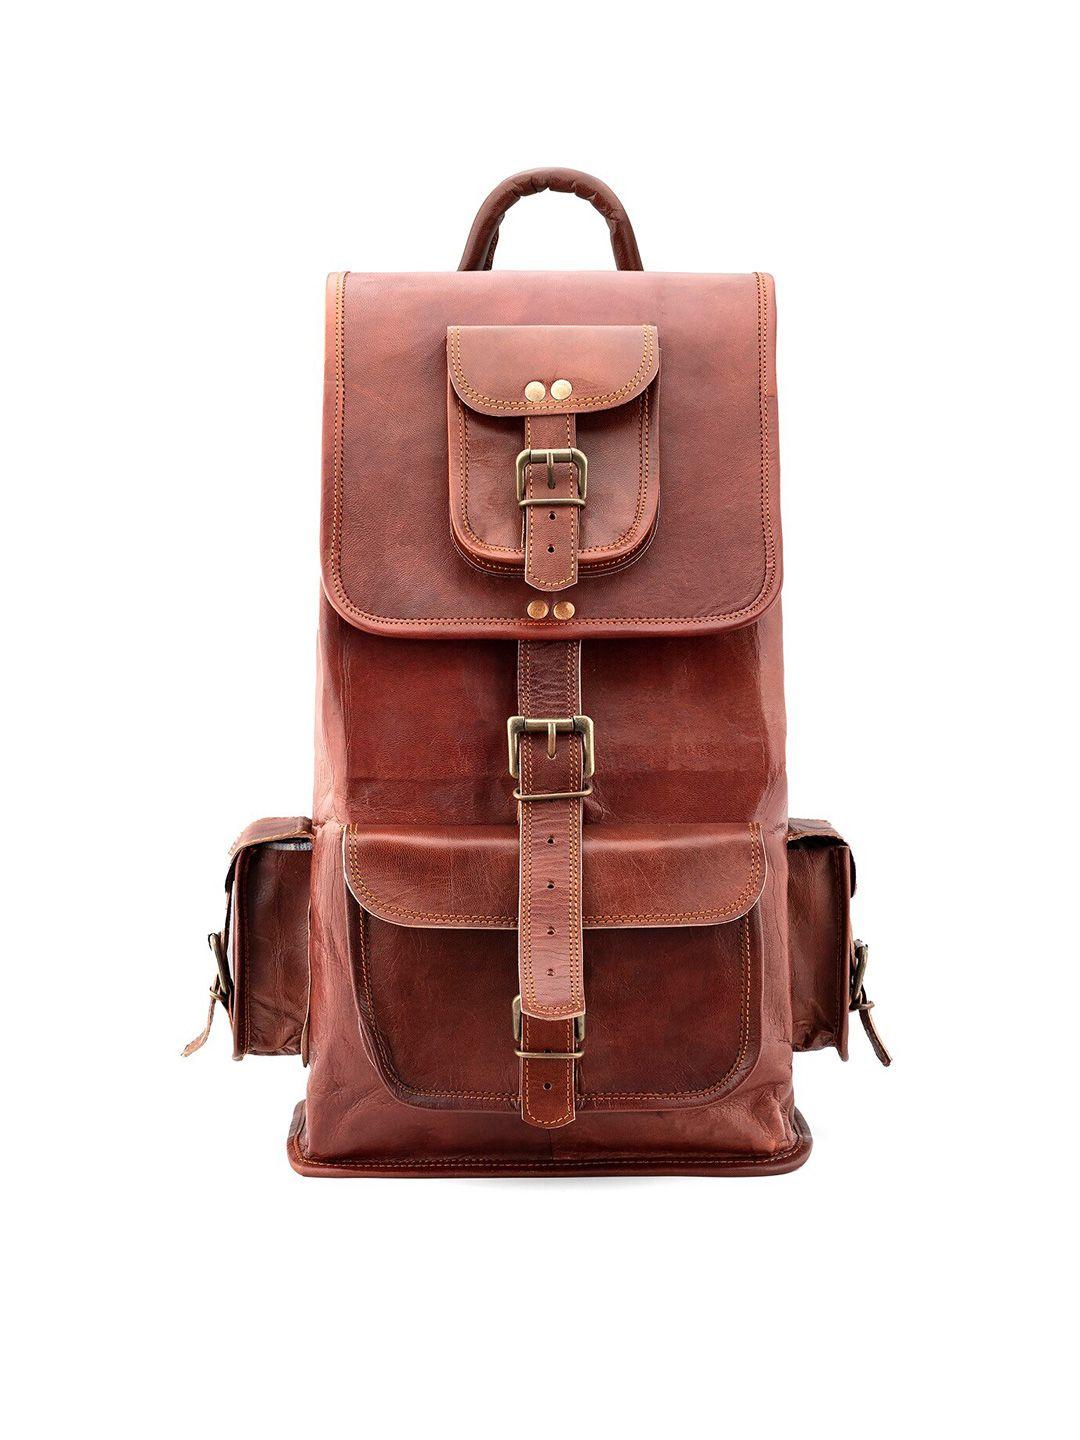 goatter unisex brown backpack